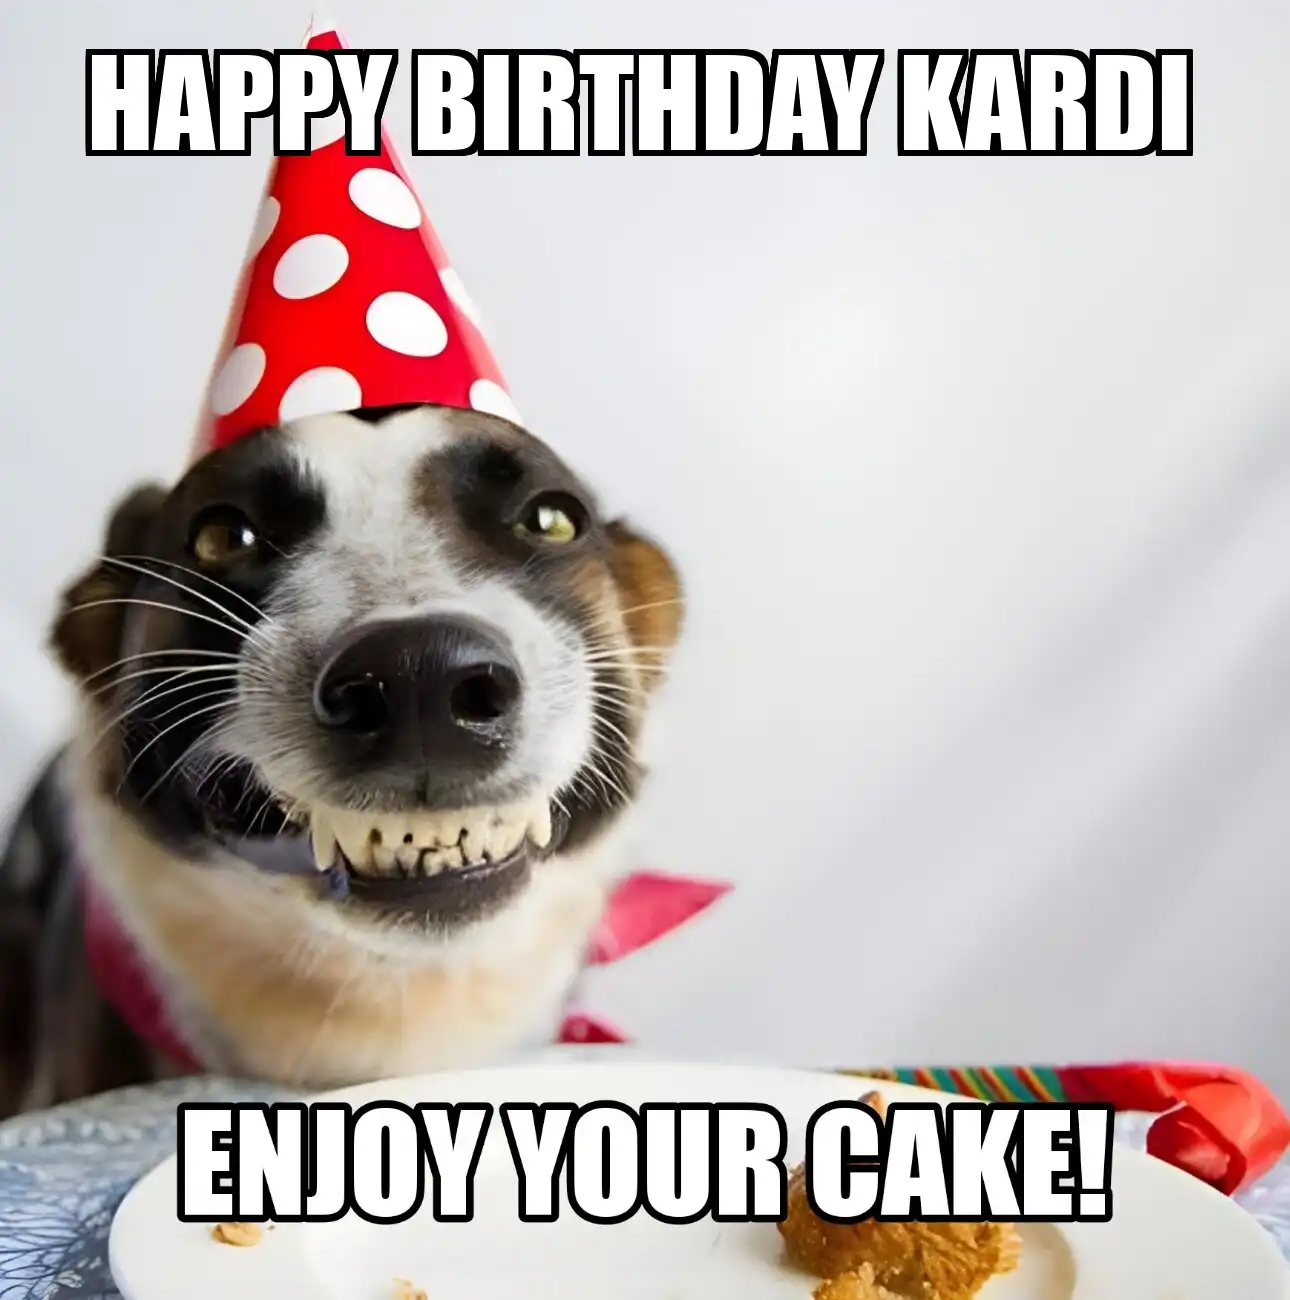 Happy Birthday Kardi Enjoy Your Cake Dog Meme